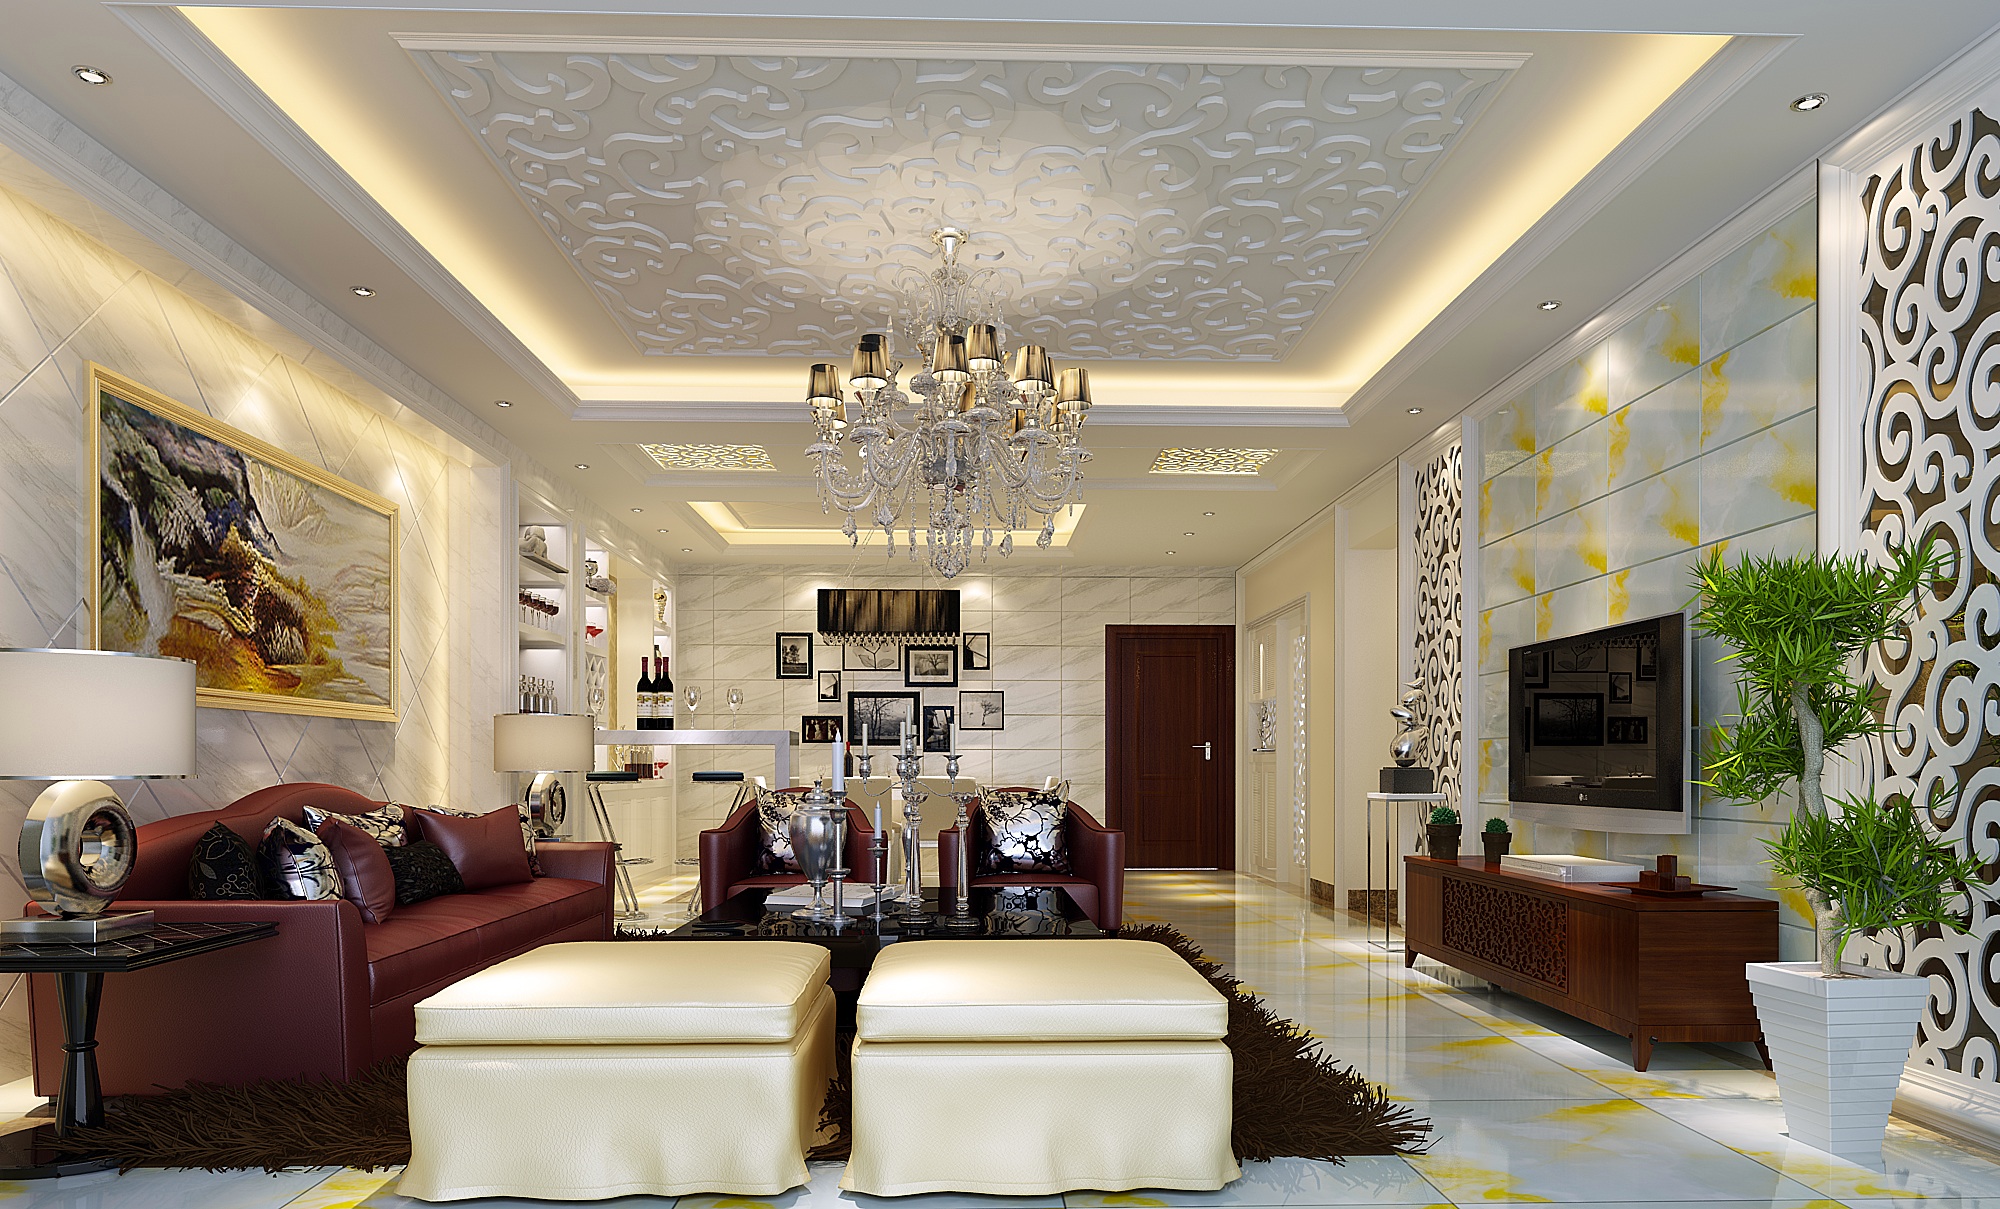 凤凰城凤锦 简欧 四居室 客厅图片来自传承正能量在凤凰城200平简欧的白色温馨的家的分享